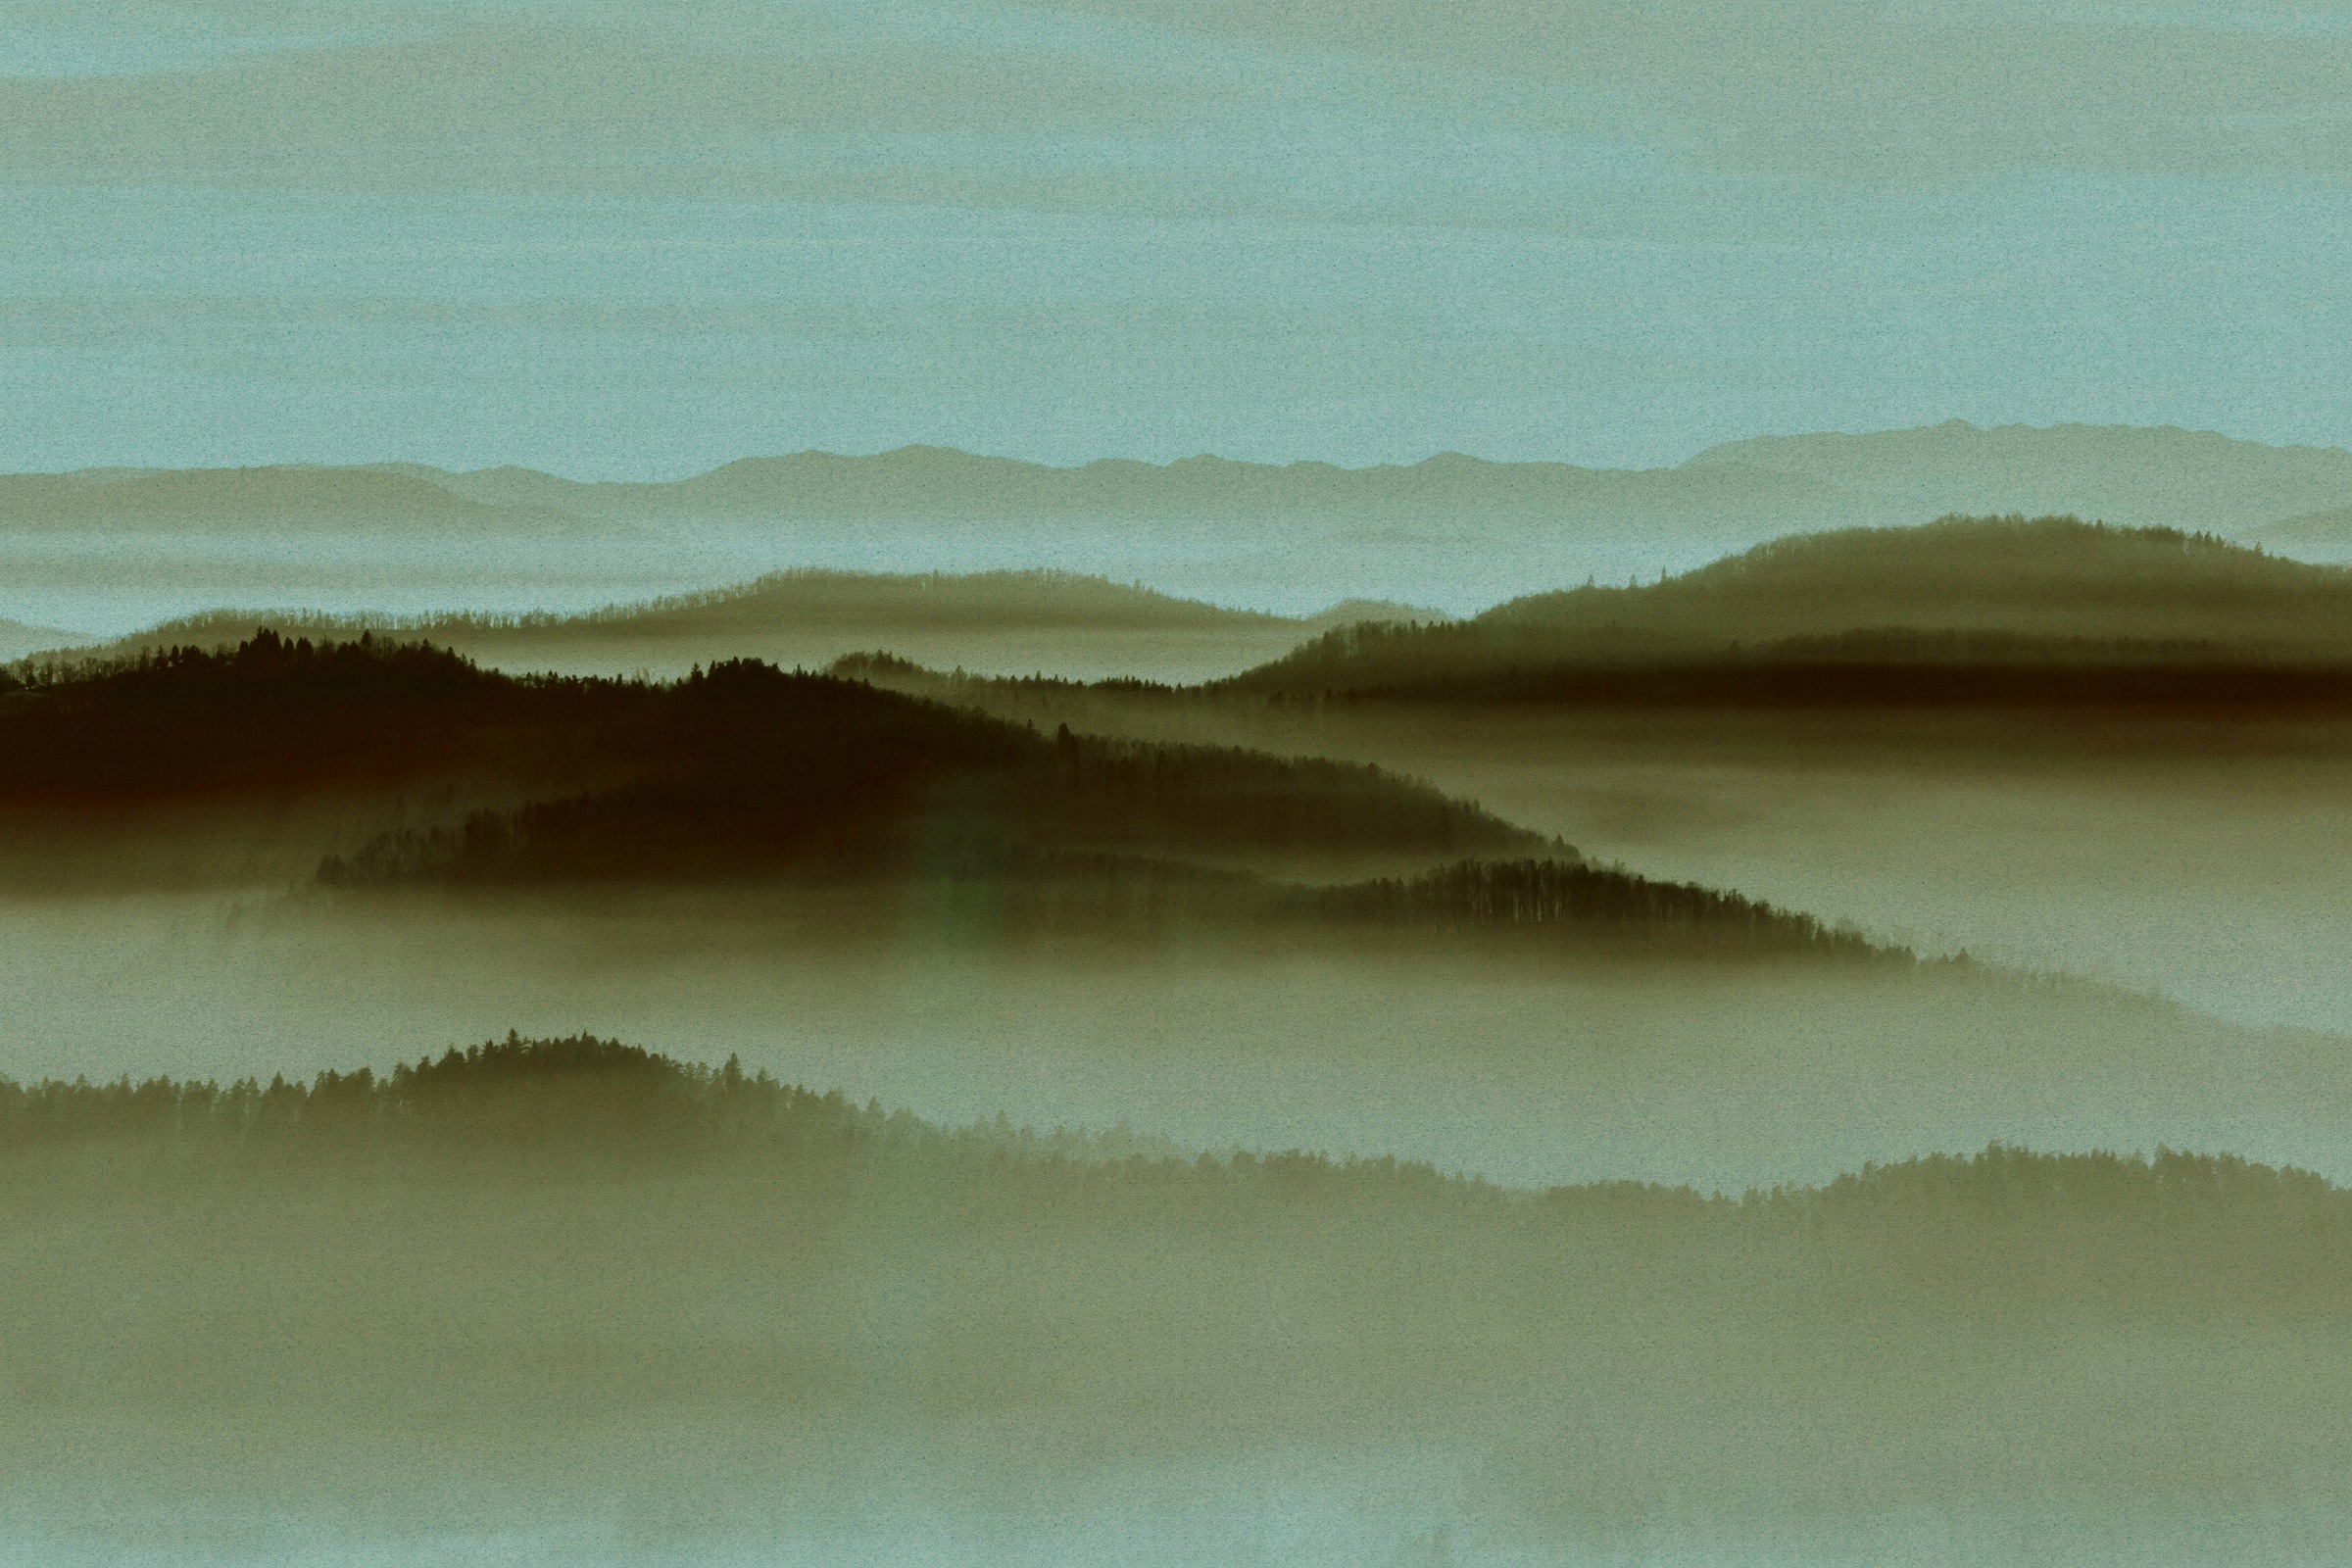 A.S. Création Leinwandbild »horizon«, Landschaft, (1 St.), Keilrahmen Bild Landschaft Berge Gebirge Nebel